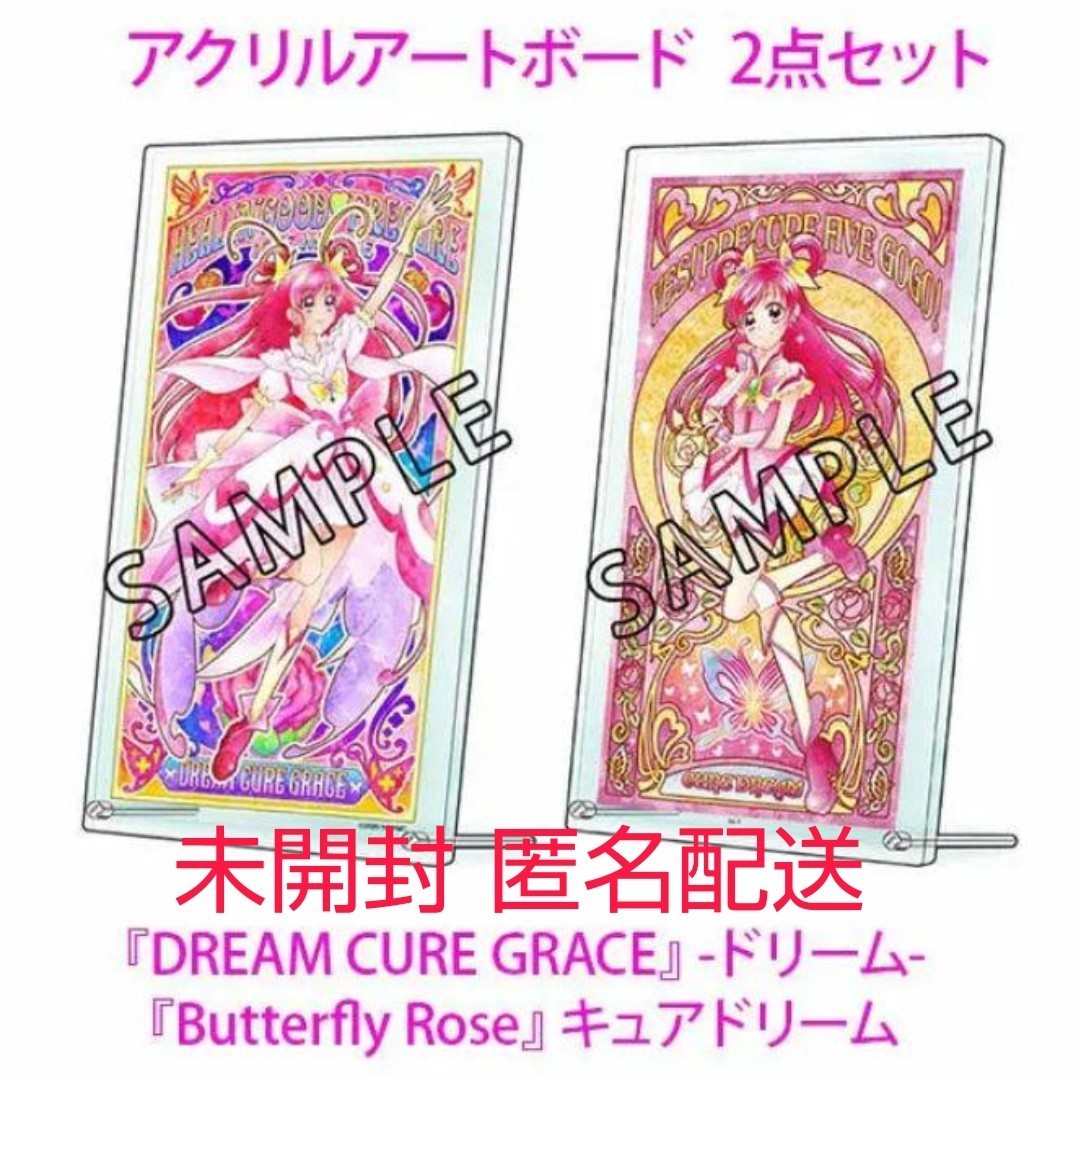 即決 プリティストア限定 キュアドリーム アクリルアートボード Butterfly Rose DREAM CURE GRACE-ドリーム- Yes プリキュア5GoGo 0